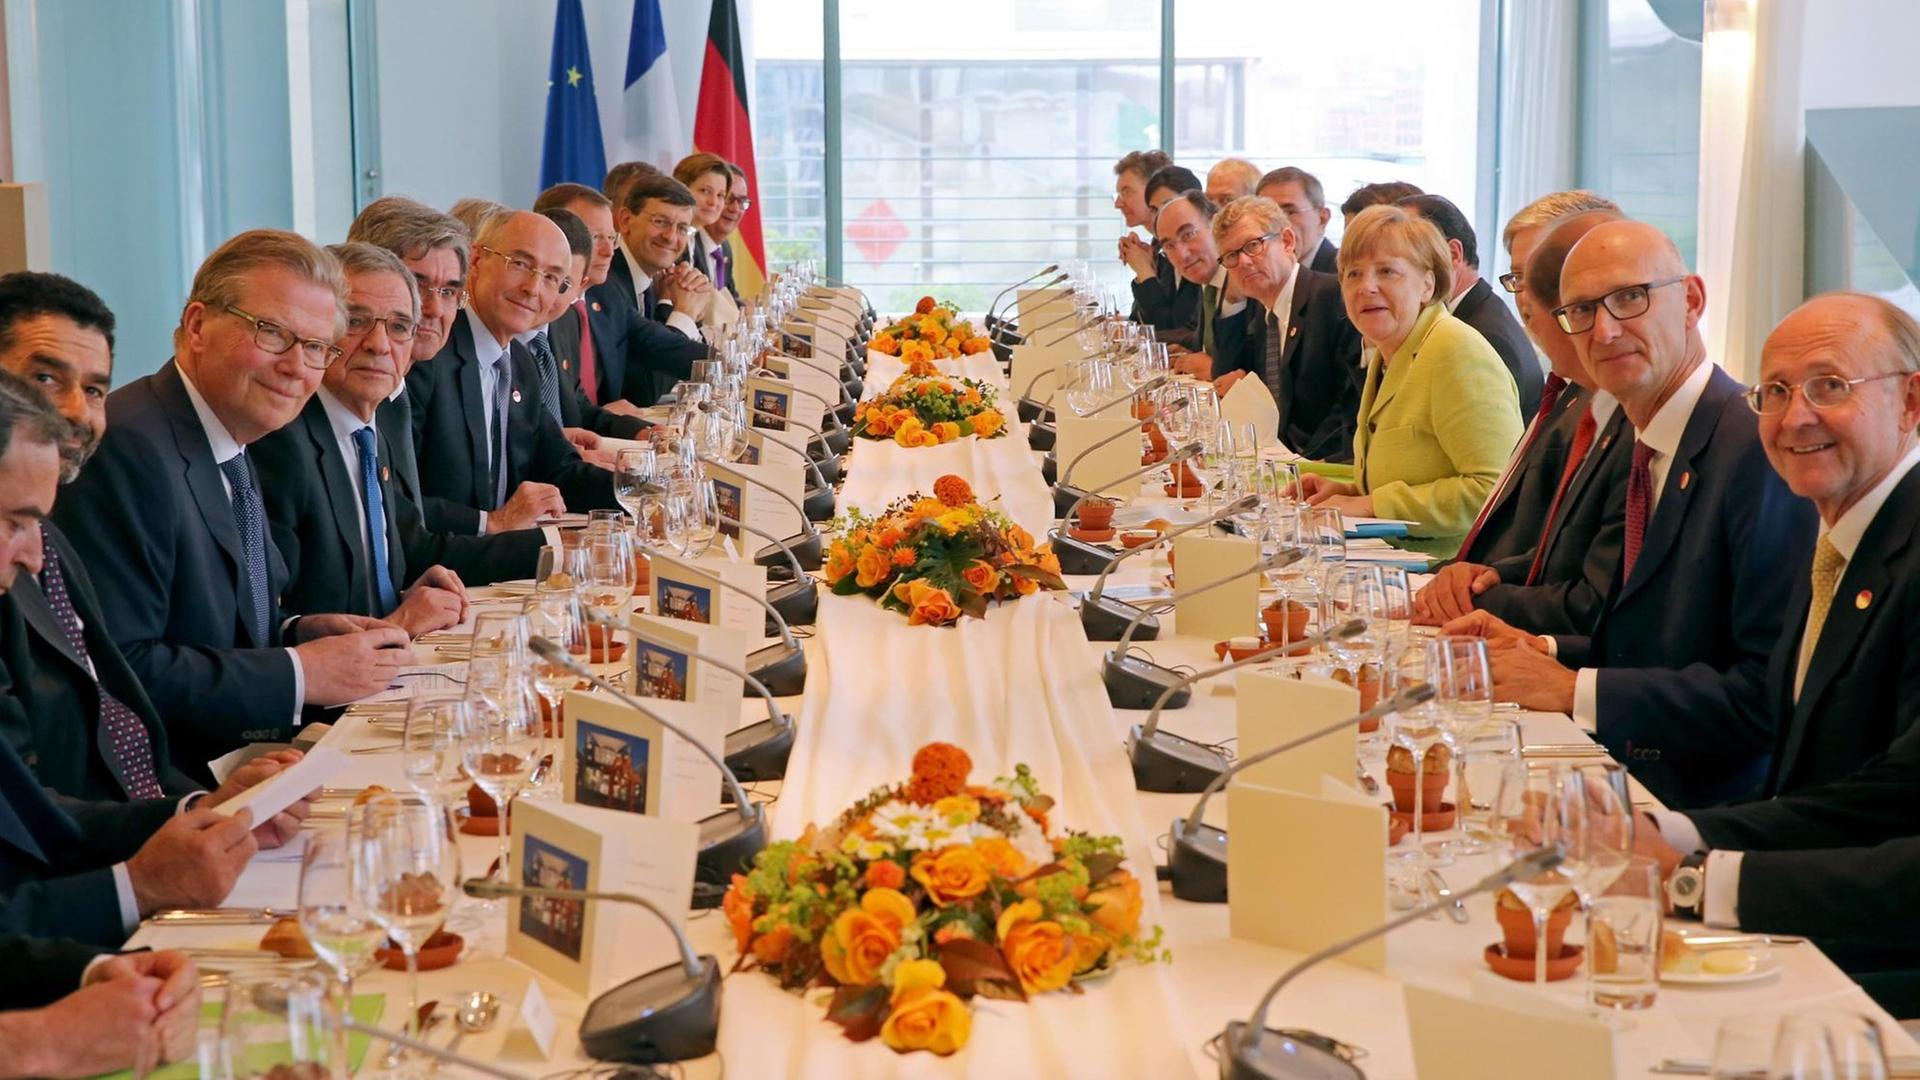 Bundeskanzlerin Angela Merkel bei einem Arbeitsessen mit Vertretern des European Round Table of Industrialists, einer Lobbyorganisation der Industrie in Brüssel